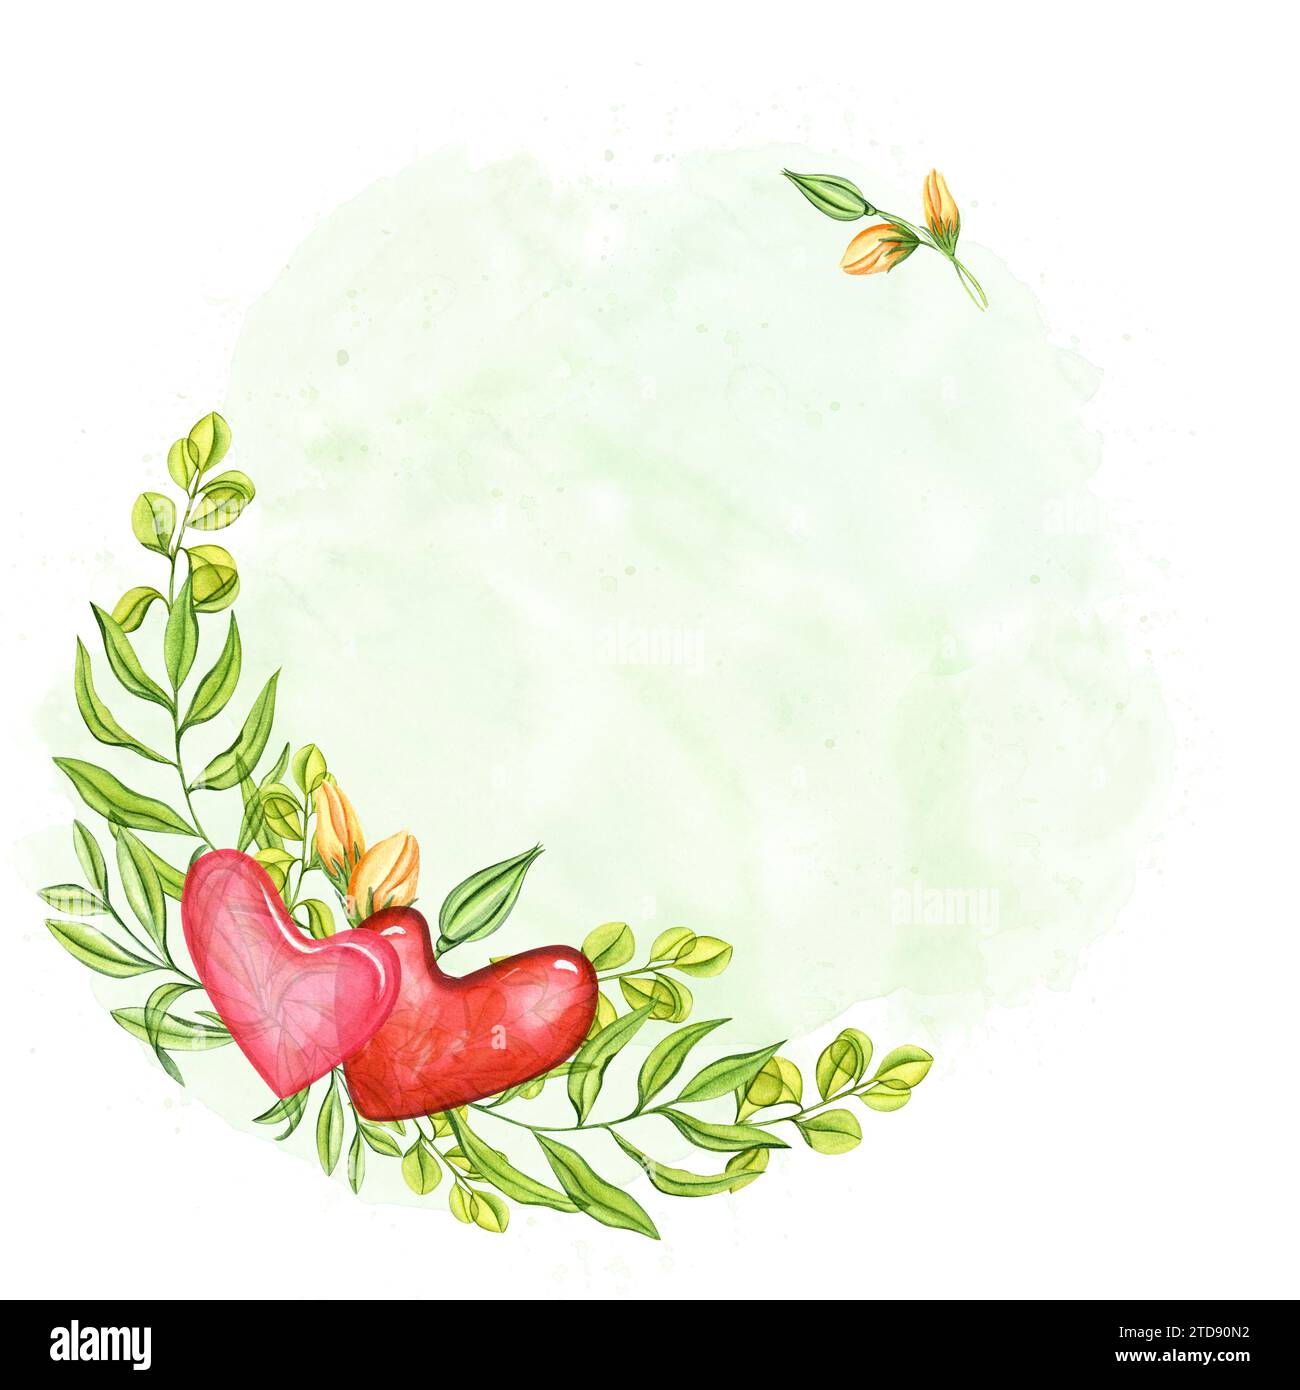 Durchsichtige rosa Herzen zwischen grünen Blättern und Rosenknospen. Romantische Frühlingspflanzen. Platz für Text auf dem Hintergrund grüner Farbstriche. Aquarell Stockfoto